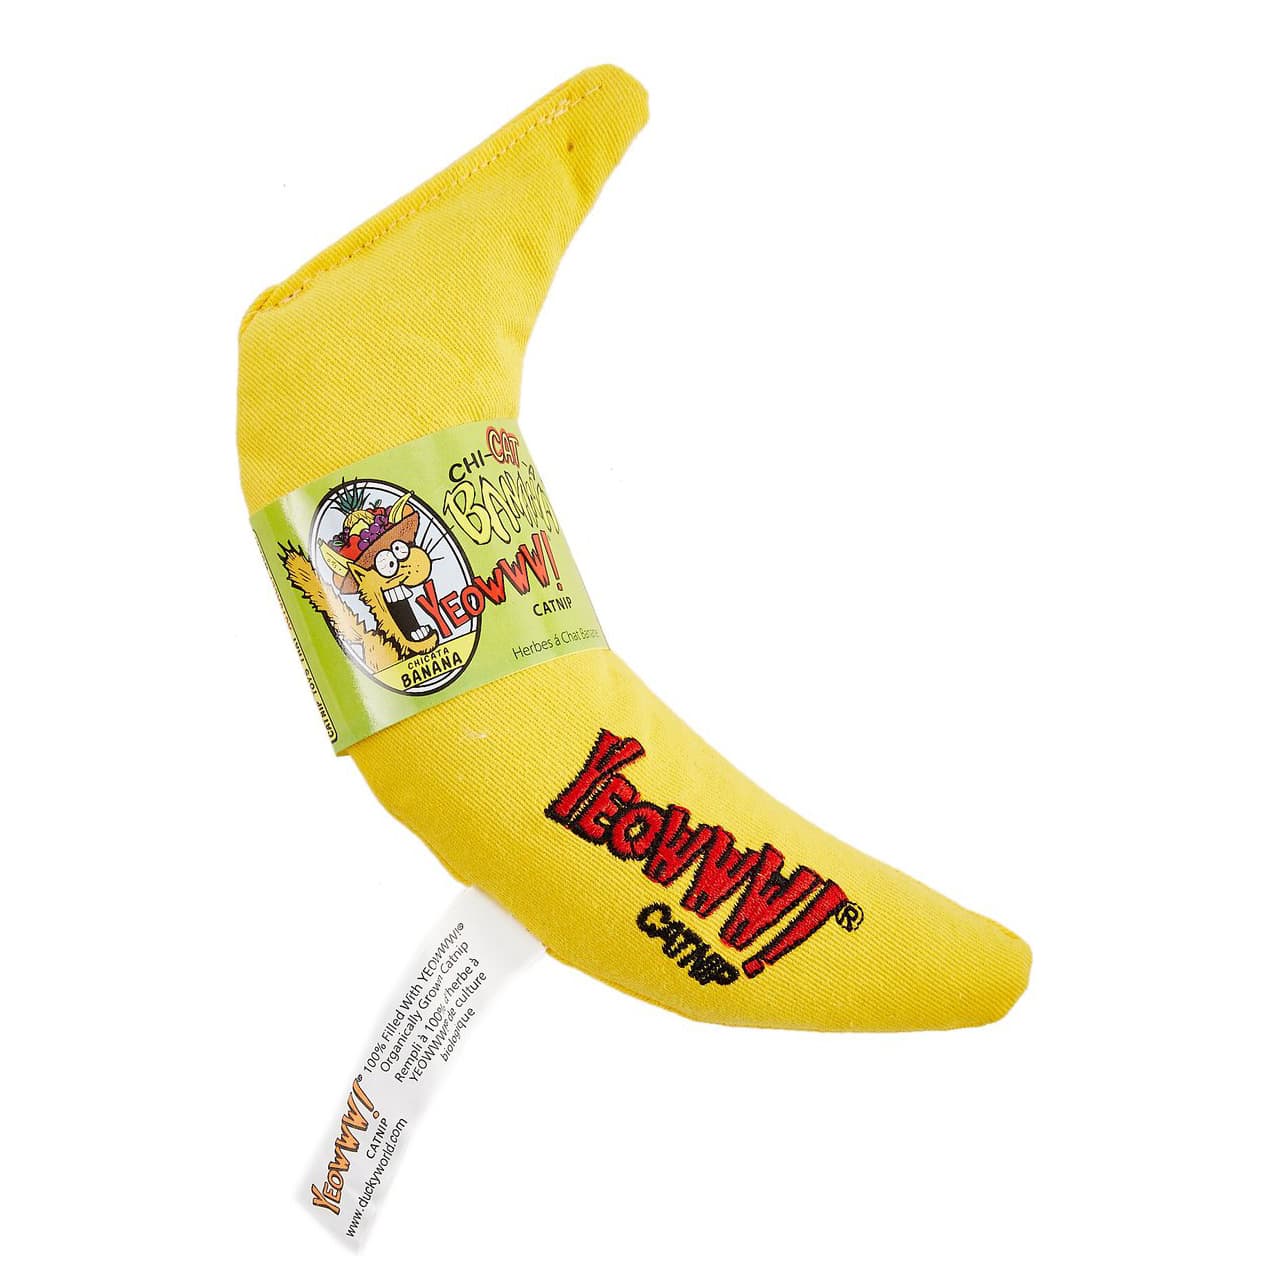 Catnip Yellow Banana Cat Toy